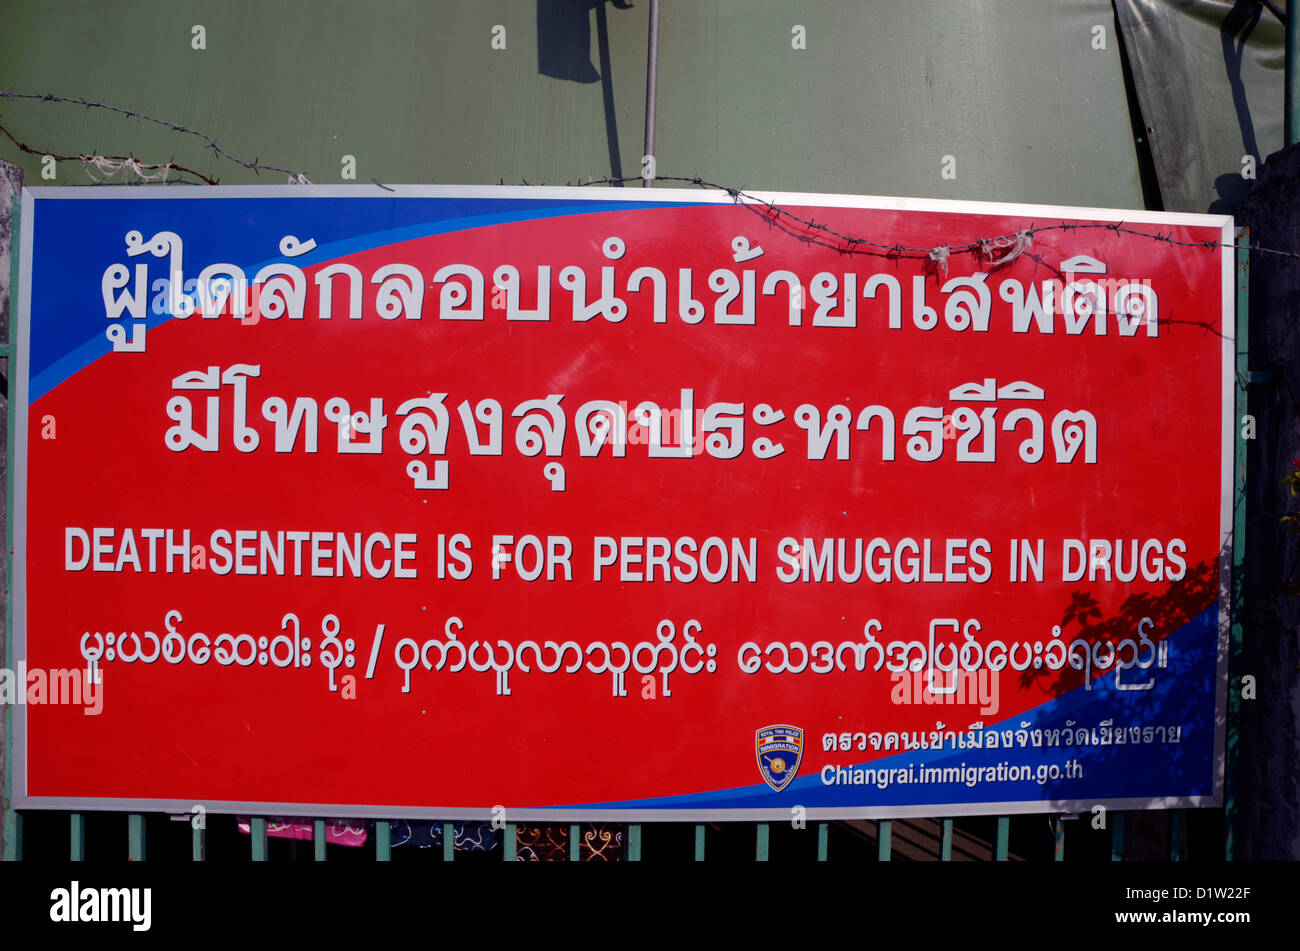 Un cartel en inglés y en birmano tailandeses, advierte de la pena de muerte para los traficantes de drogas, en la frontera con Myanmar, Tailandia Foto de stock